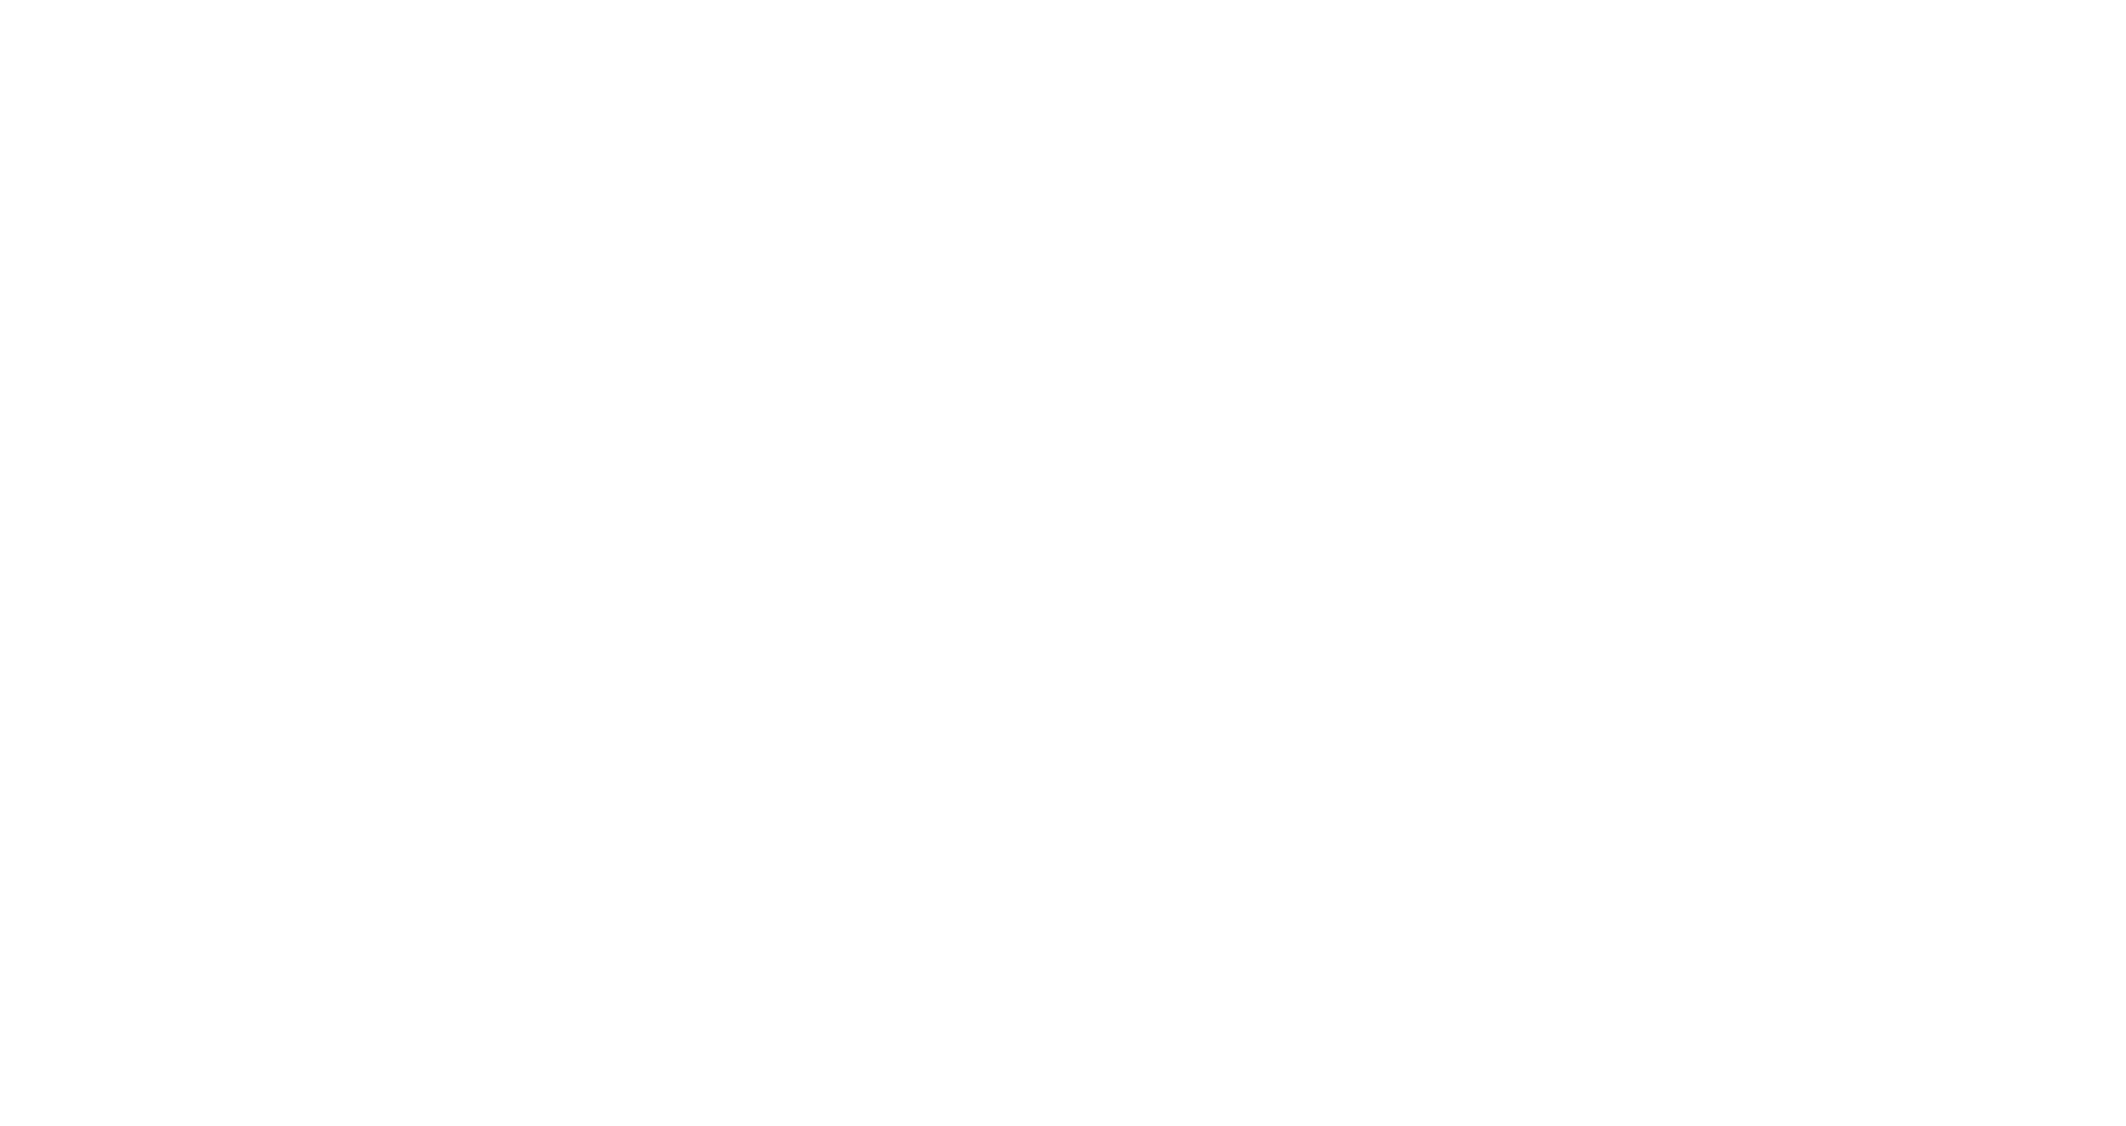 cVidya-Netzwerke